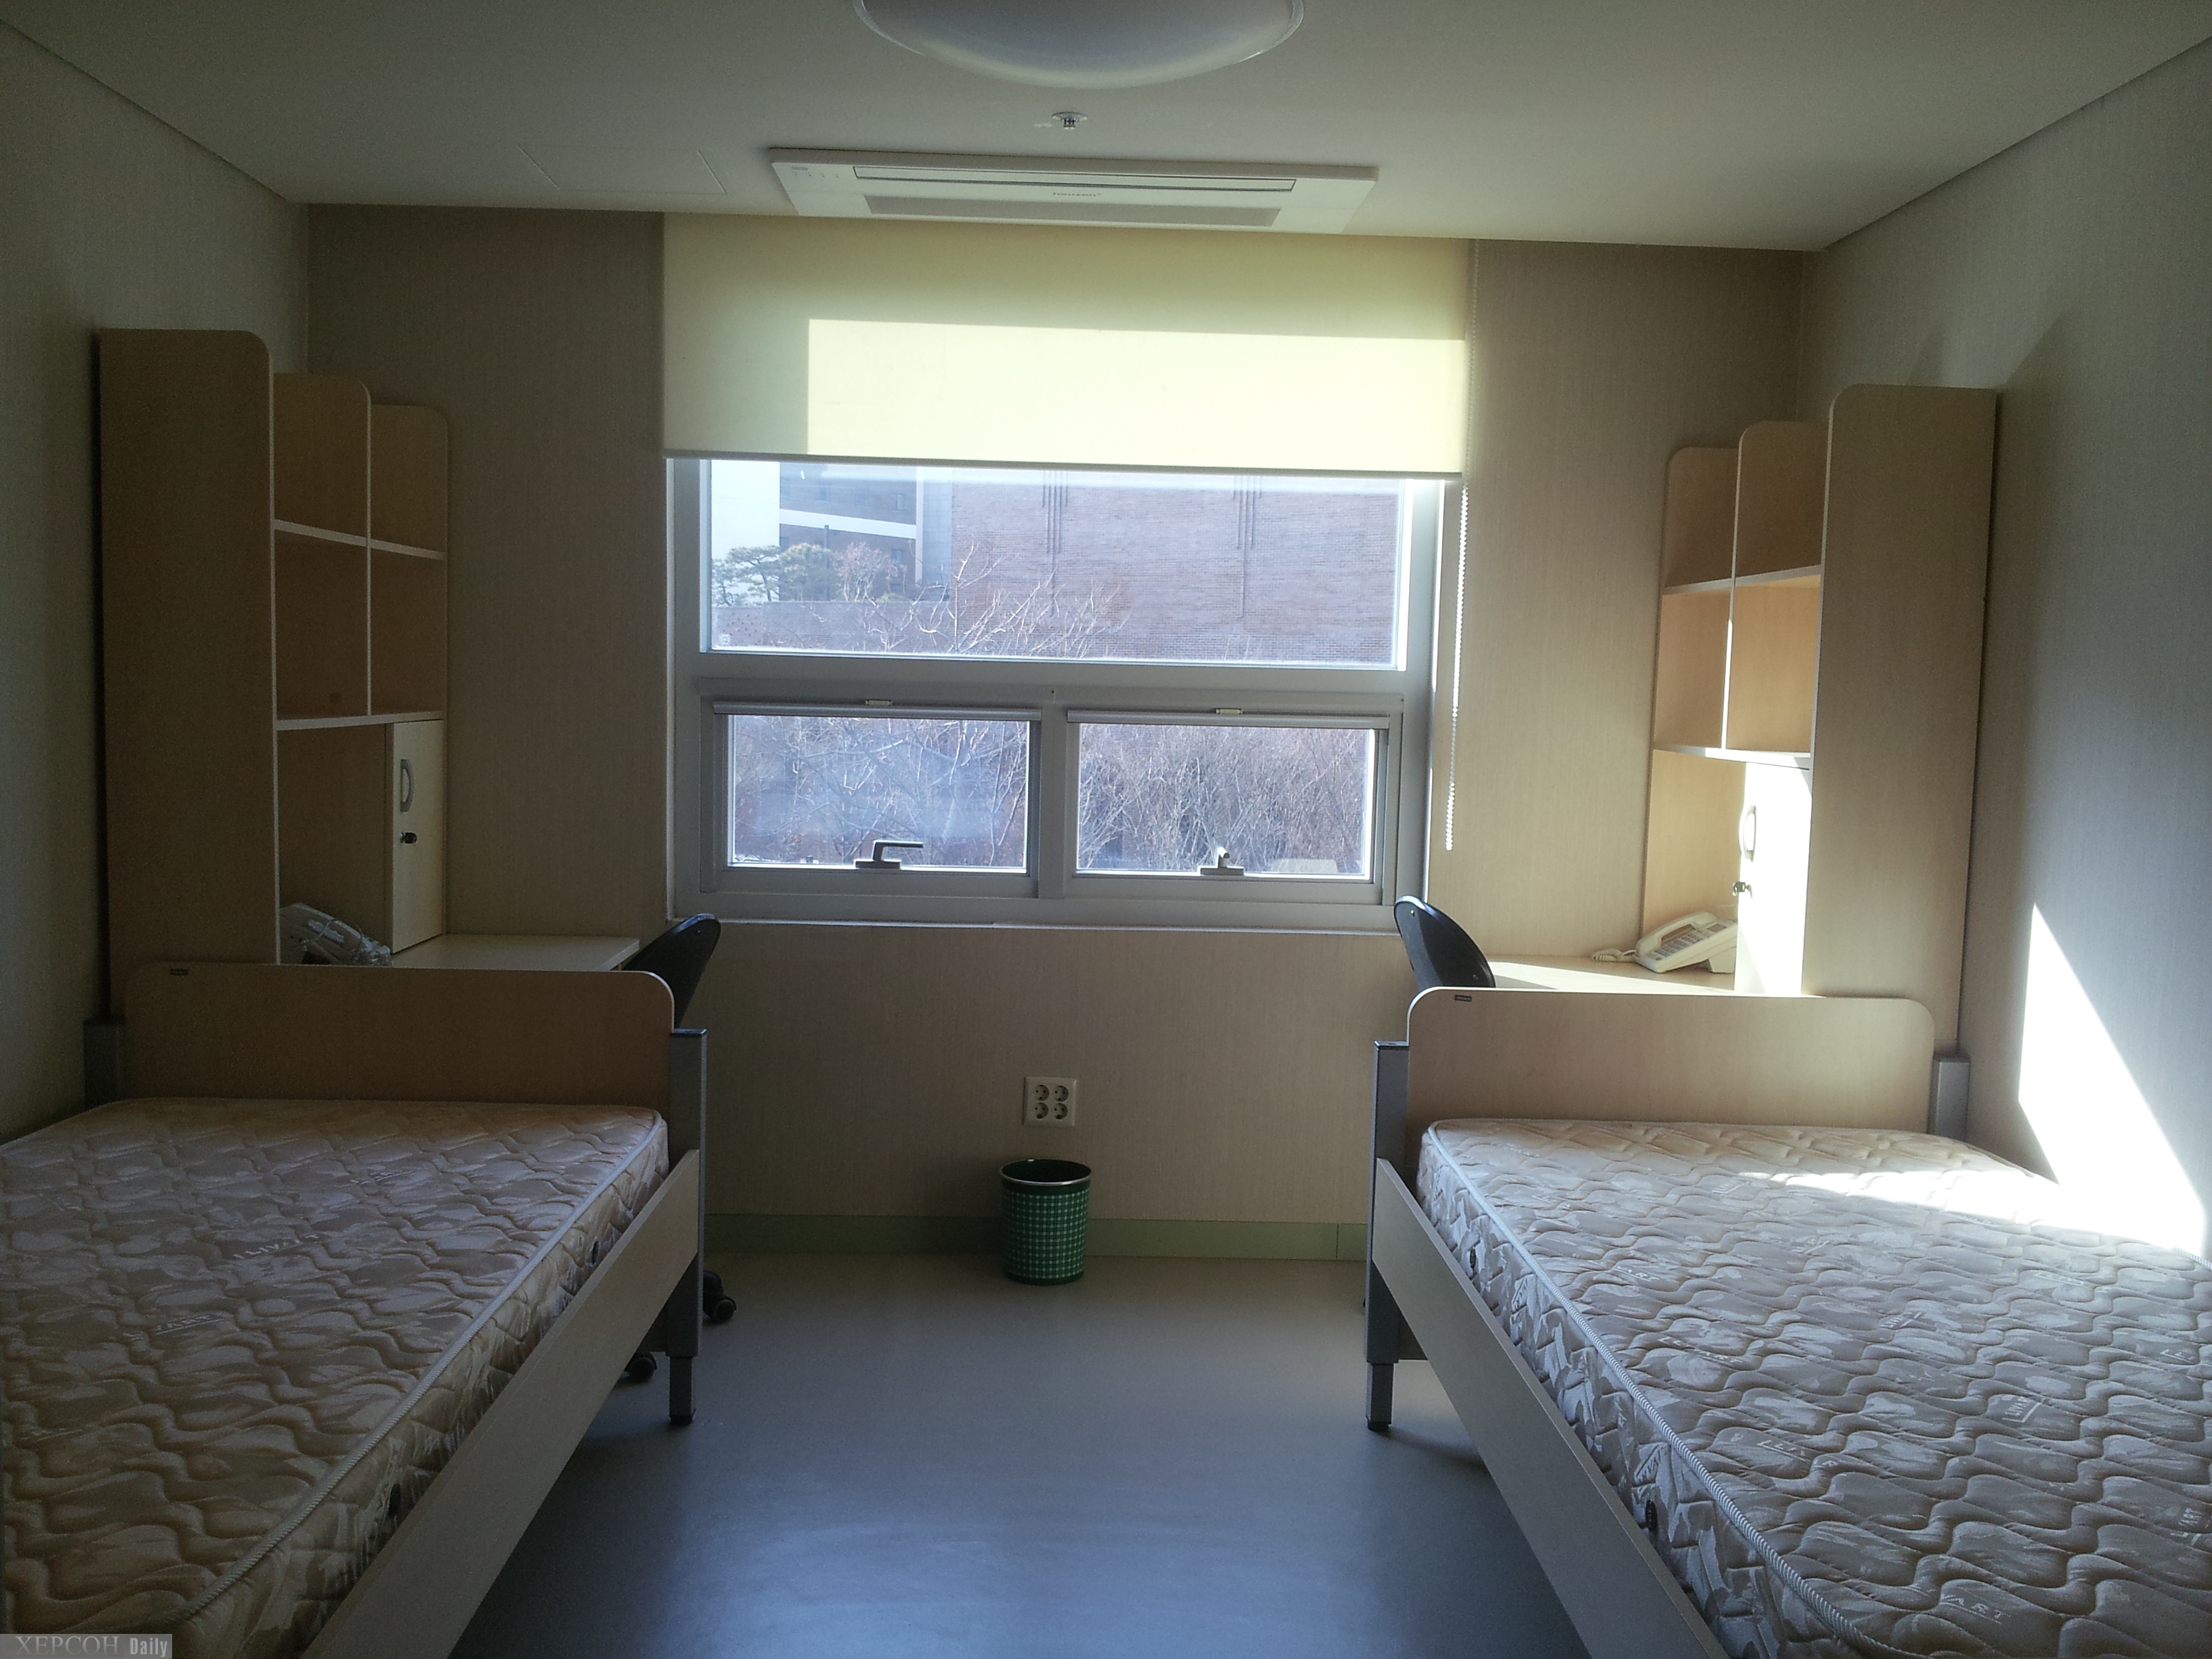 Жилая комната в общежитии